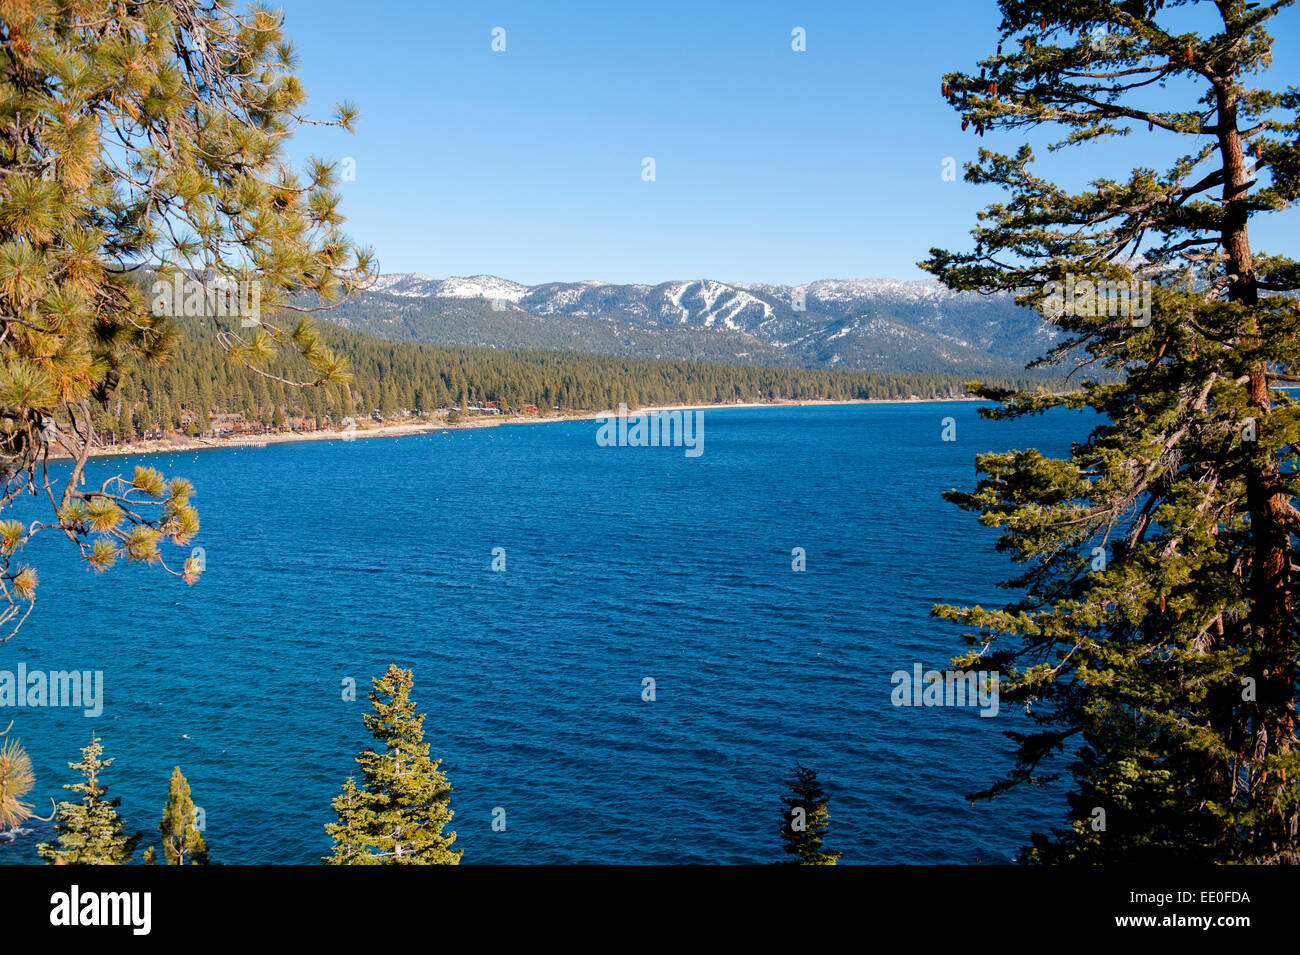 Estados Unidos Nevada NV Lake Tahoe Vista invernal de Incline Village y el Diamond Peak Ski Resort en las montañas de la Sierra Madre Foto de stock